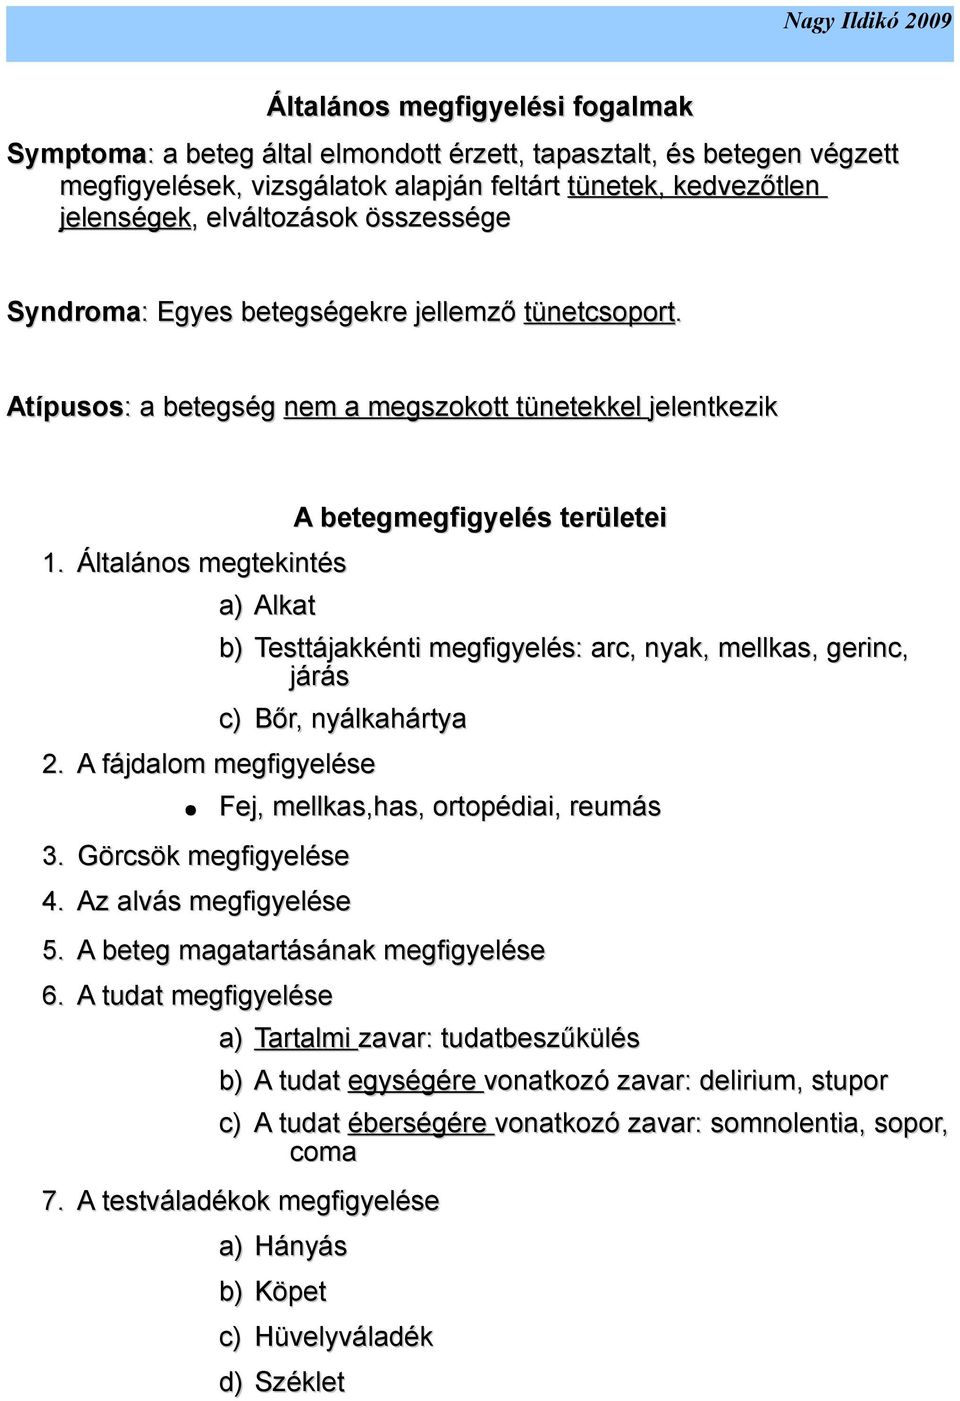 Általános megtekintés a) Alkat A betegmegfigyelés területei b) Testtájakkénti megfigyelés: arc, nyak, mellkas, gerinc, járás c) Bőr, nyálkahártya 2. A fájdalom megfigyelése 3. Görcsök megfigyelése 4.